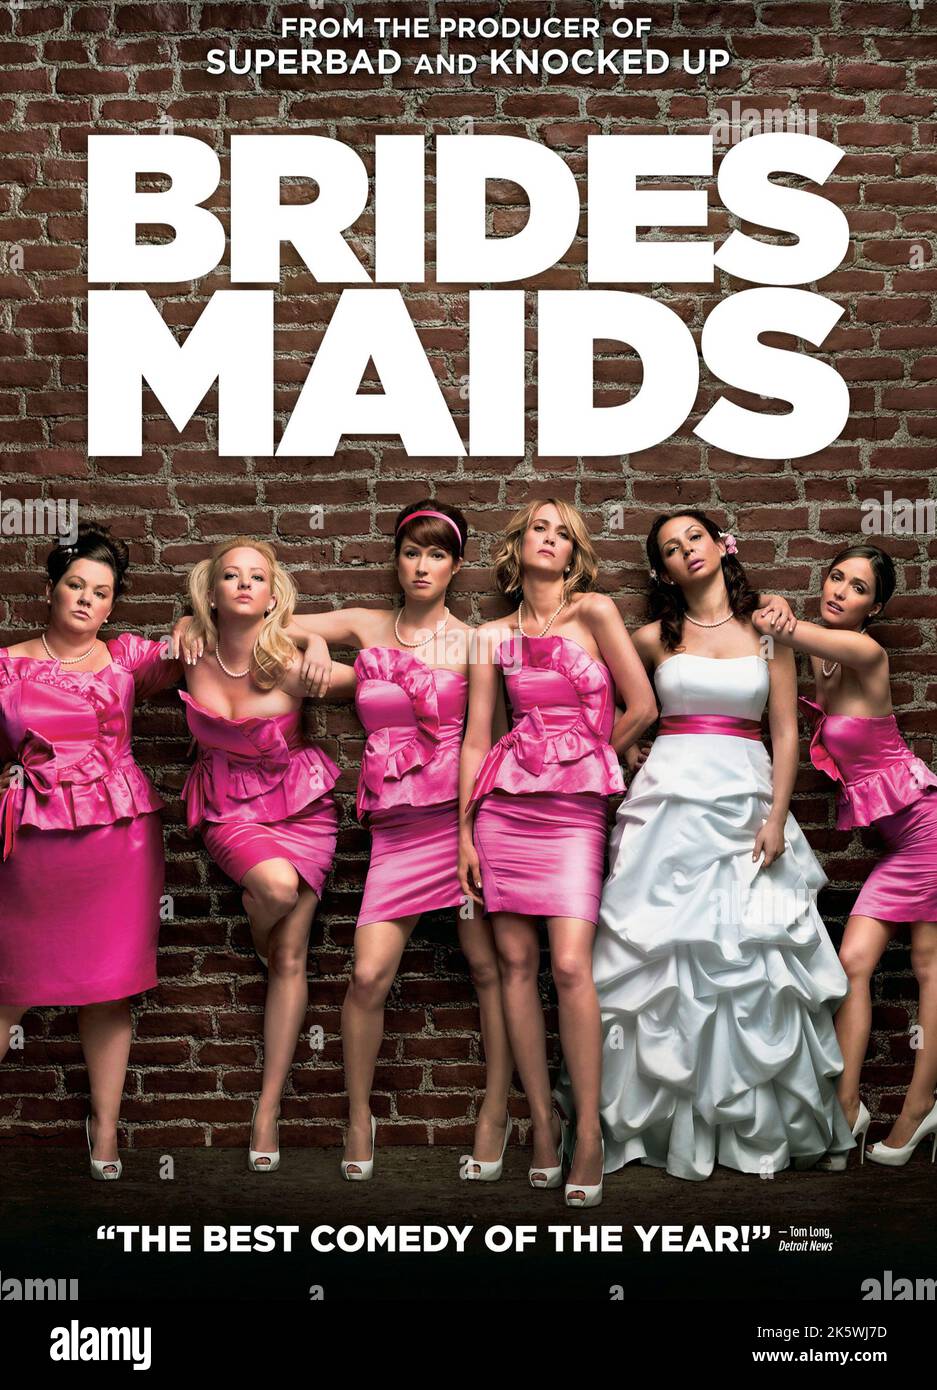 Bridesmaids 2011 Movie Poster Stock Photo